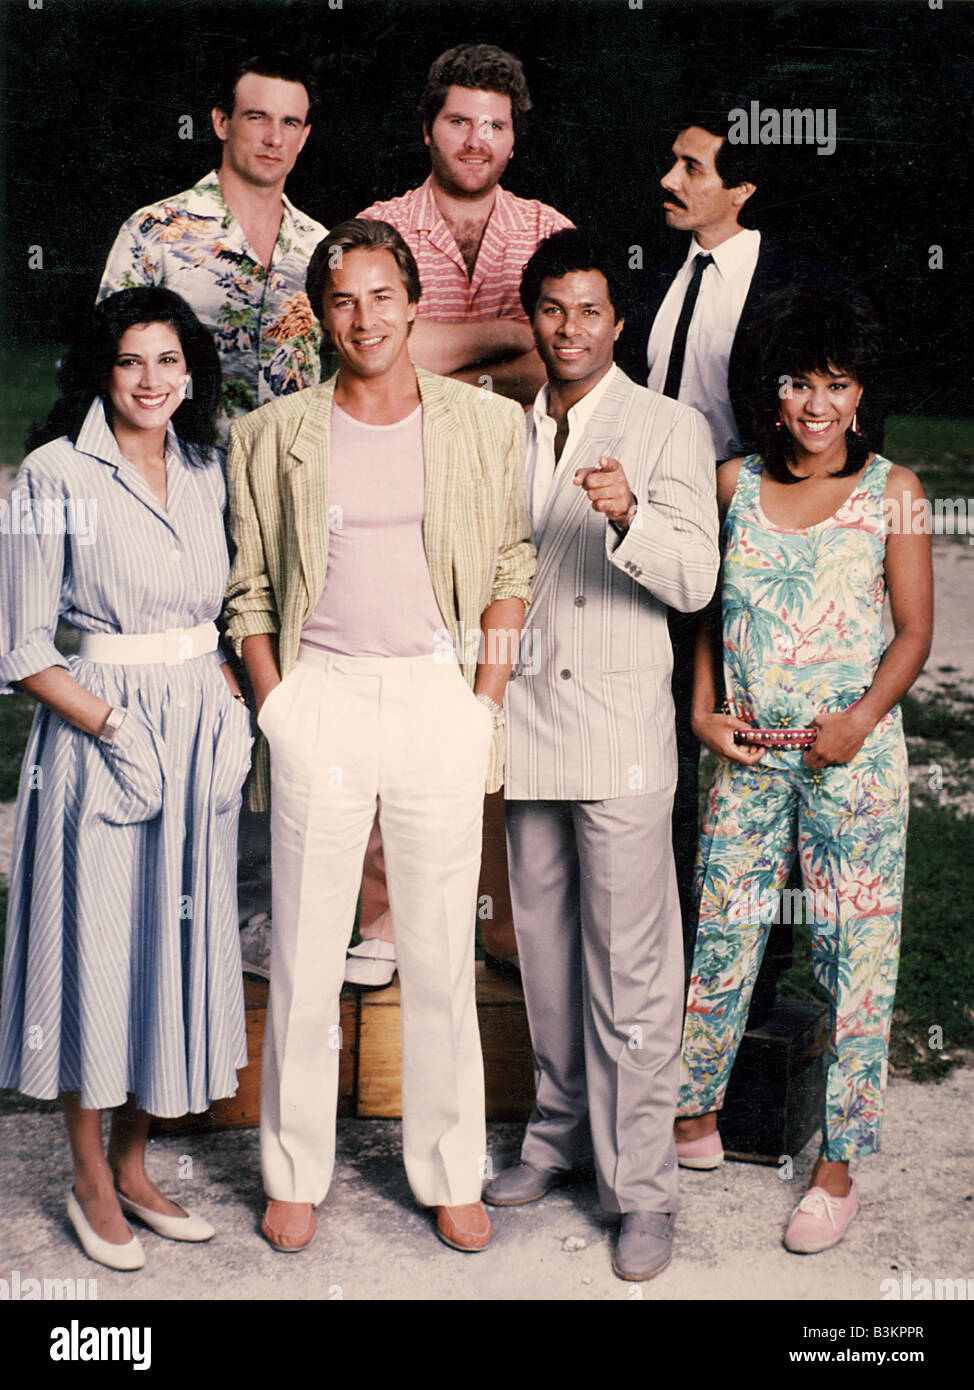 MIAMI VICE US-Fernsehserie mit Don Johnson (weiße Hose) und Phillip Michael Thomas neben ihm lief die Show von 1984 bis 1990 Stockfoto